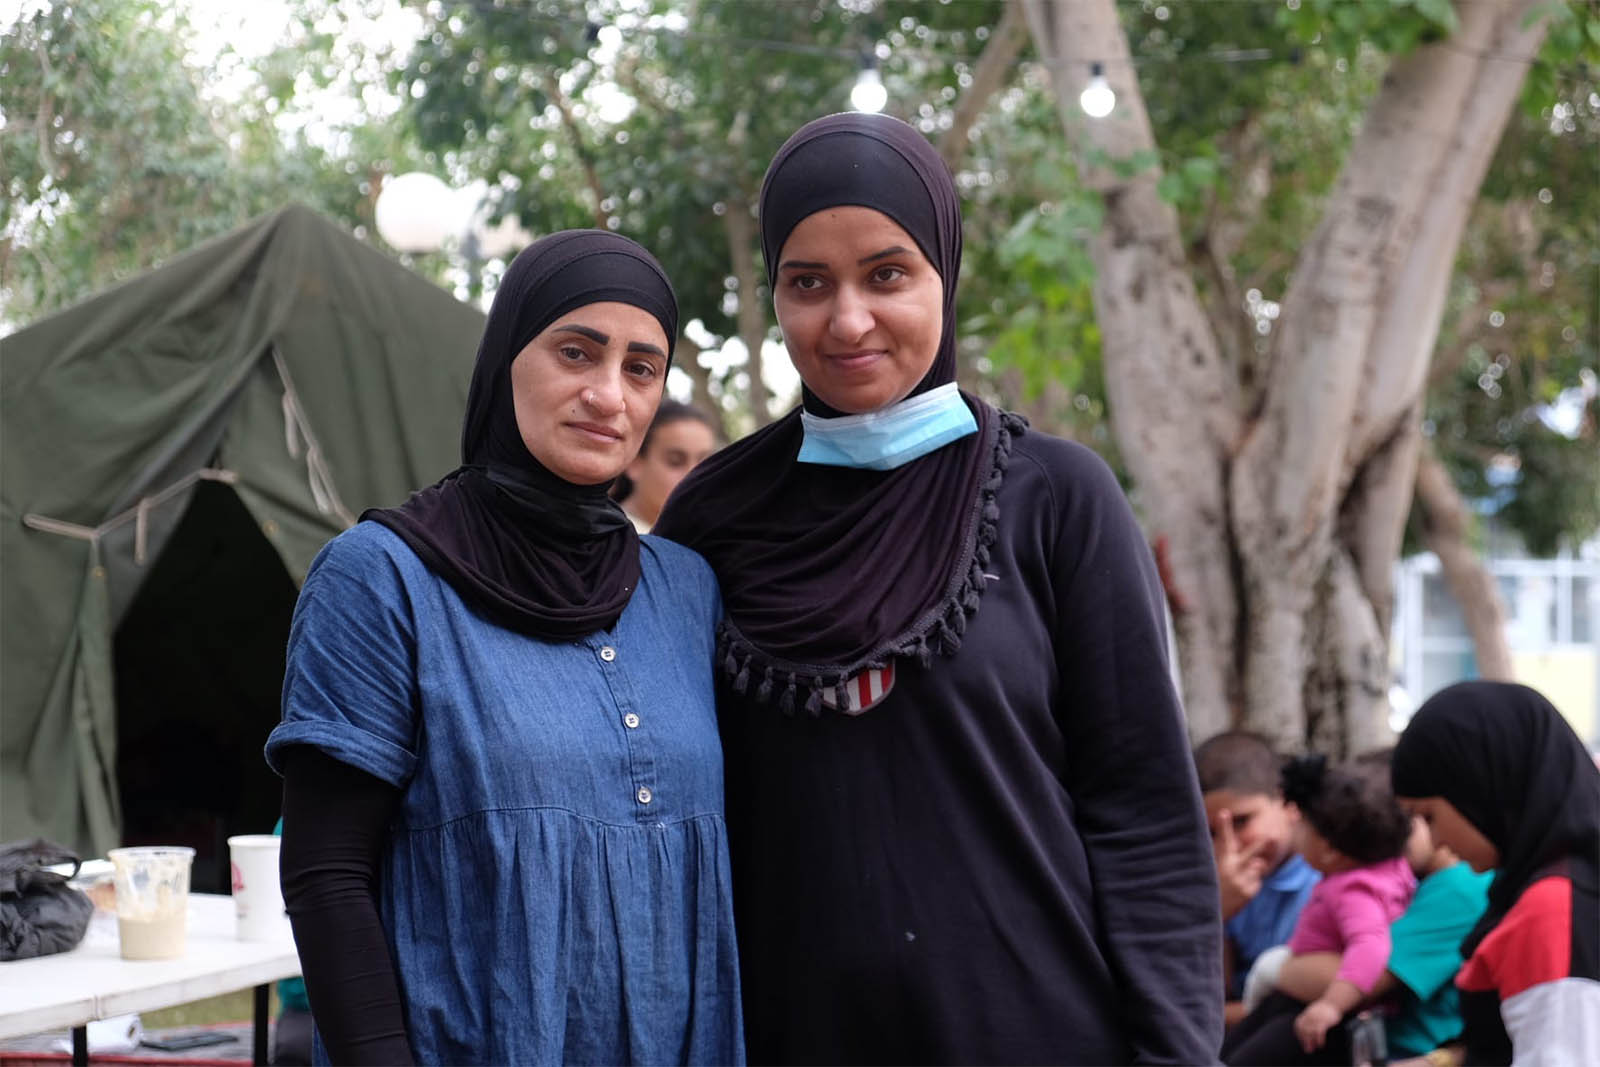 פאטמה פאור (משמאל) וסוראייה אבו-רמדאן במאהל המחאה ביפו. ״נשאר כאן עד הסוף. פה אני סוף סוף רואה את הילדים שלי, אני רואה איך זה כשהם עשר דקות מבית הספר״ (צילום: דוד טברסקי)